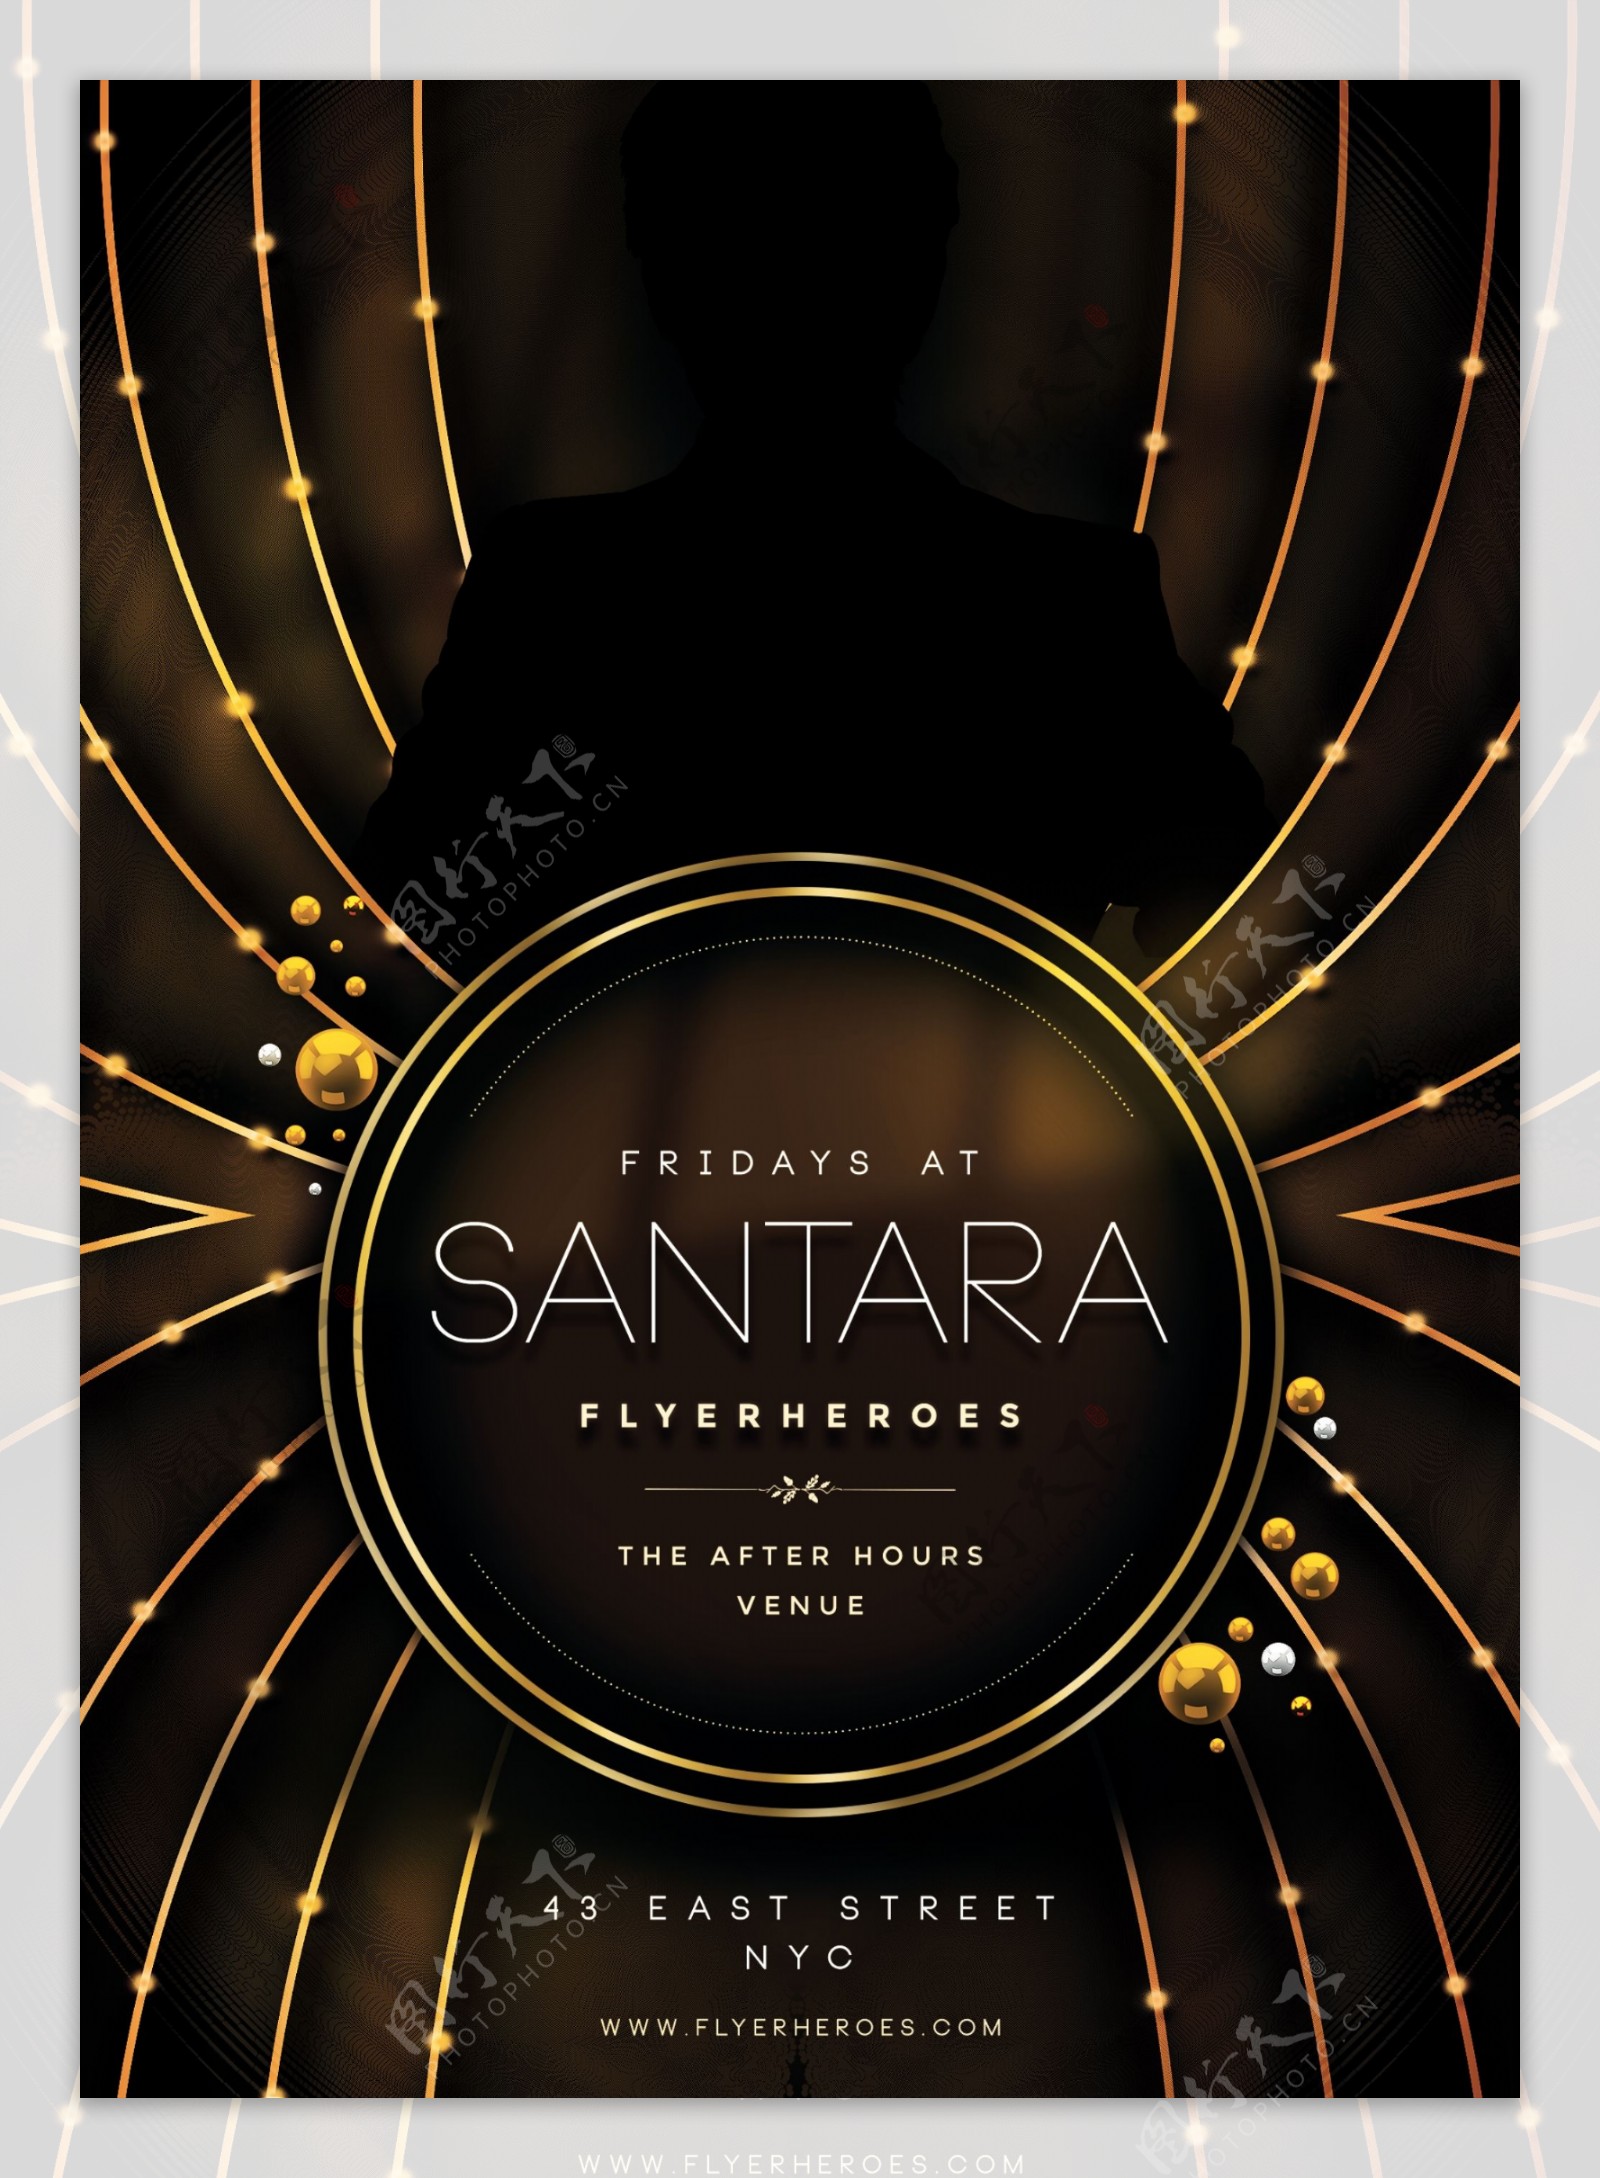 santara黑金国外创意欧美风酒吧宣传海报